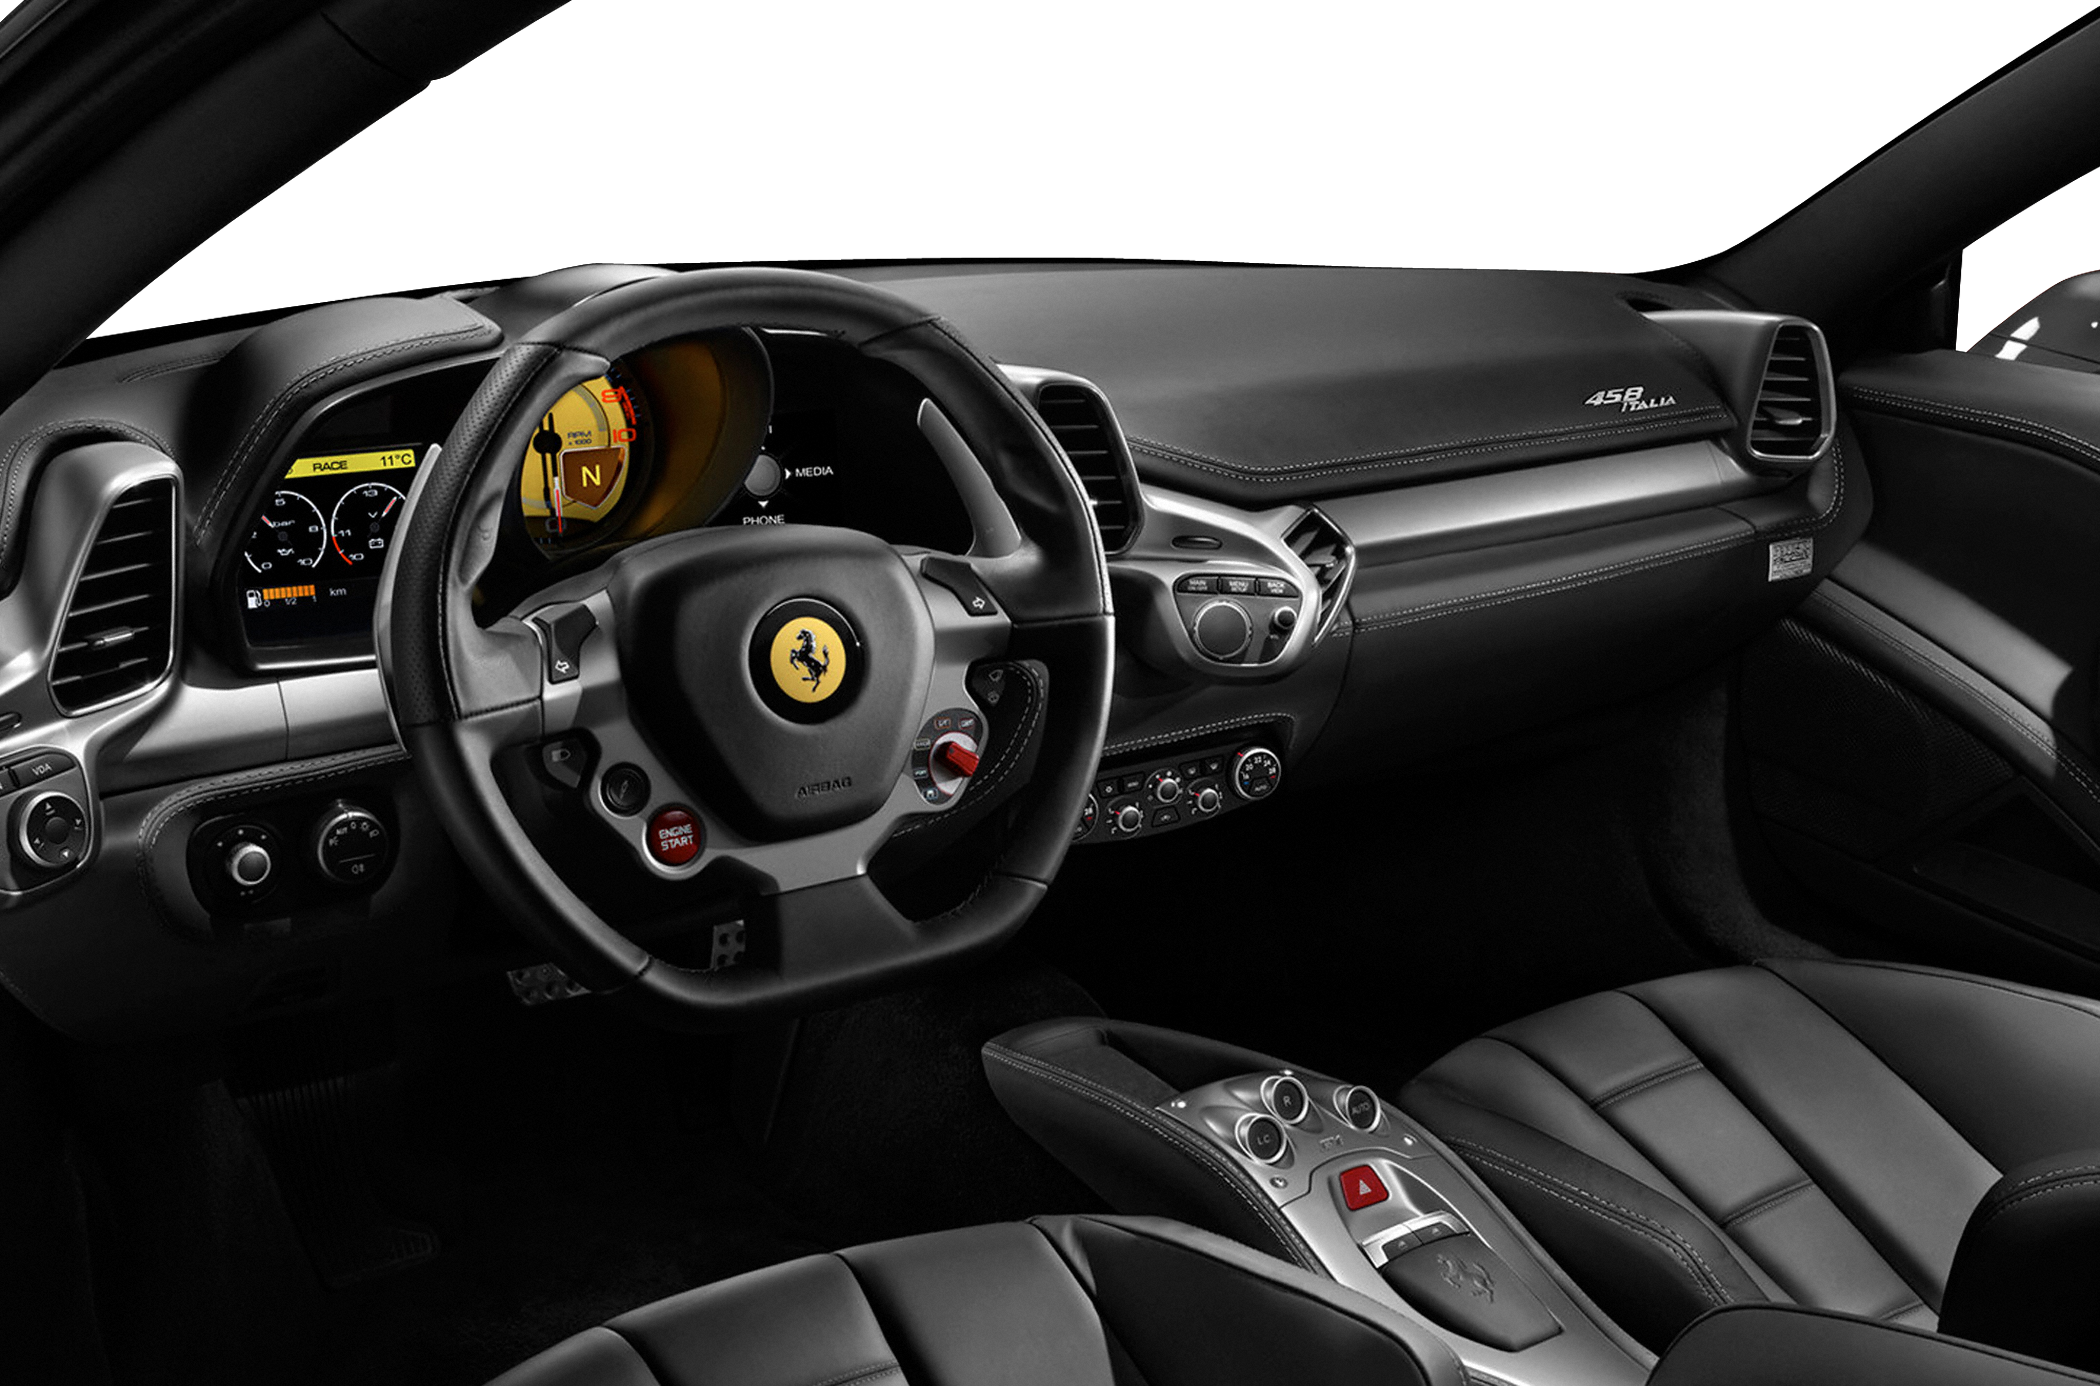 2014 Ferrari 458 Italia